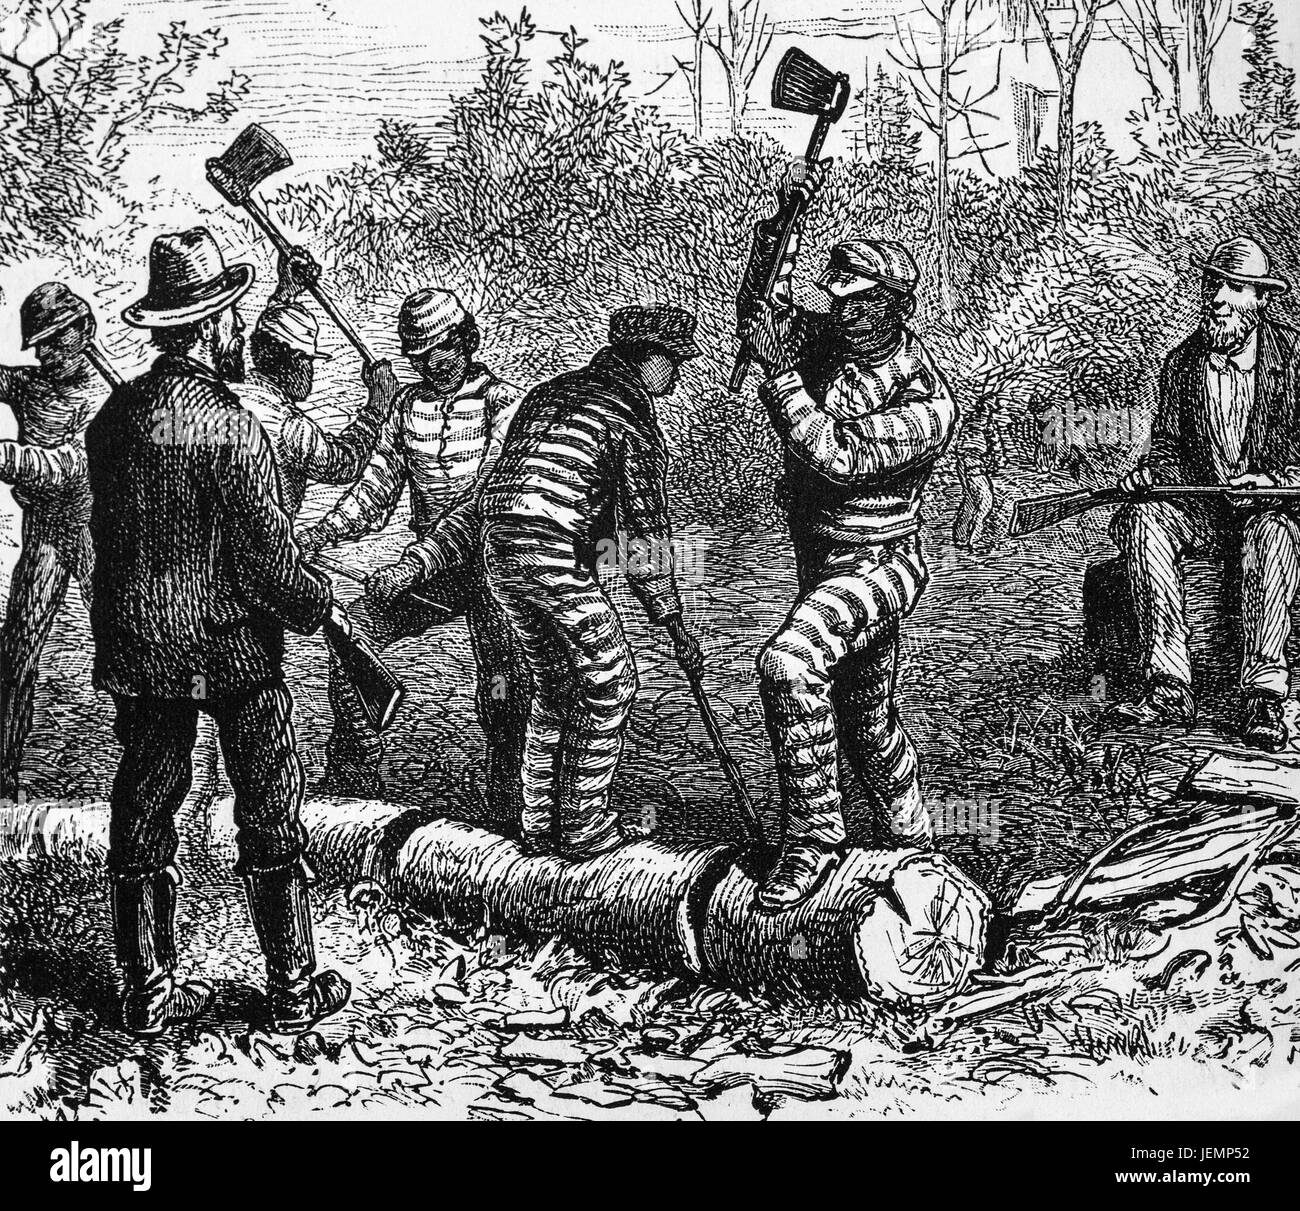 1879 : condamnés d'Richmond travail pénitentiaire dans les forêts, Virginia, United States of America Banque D'Images